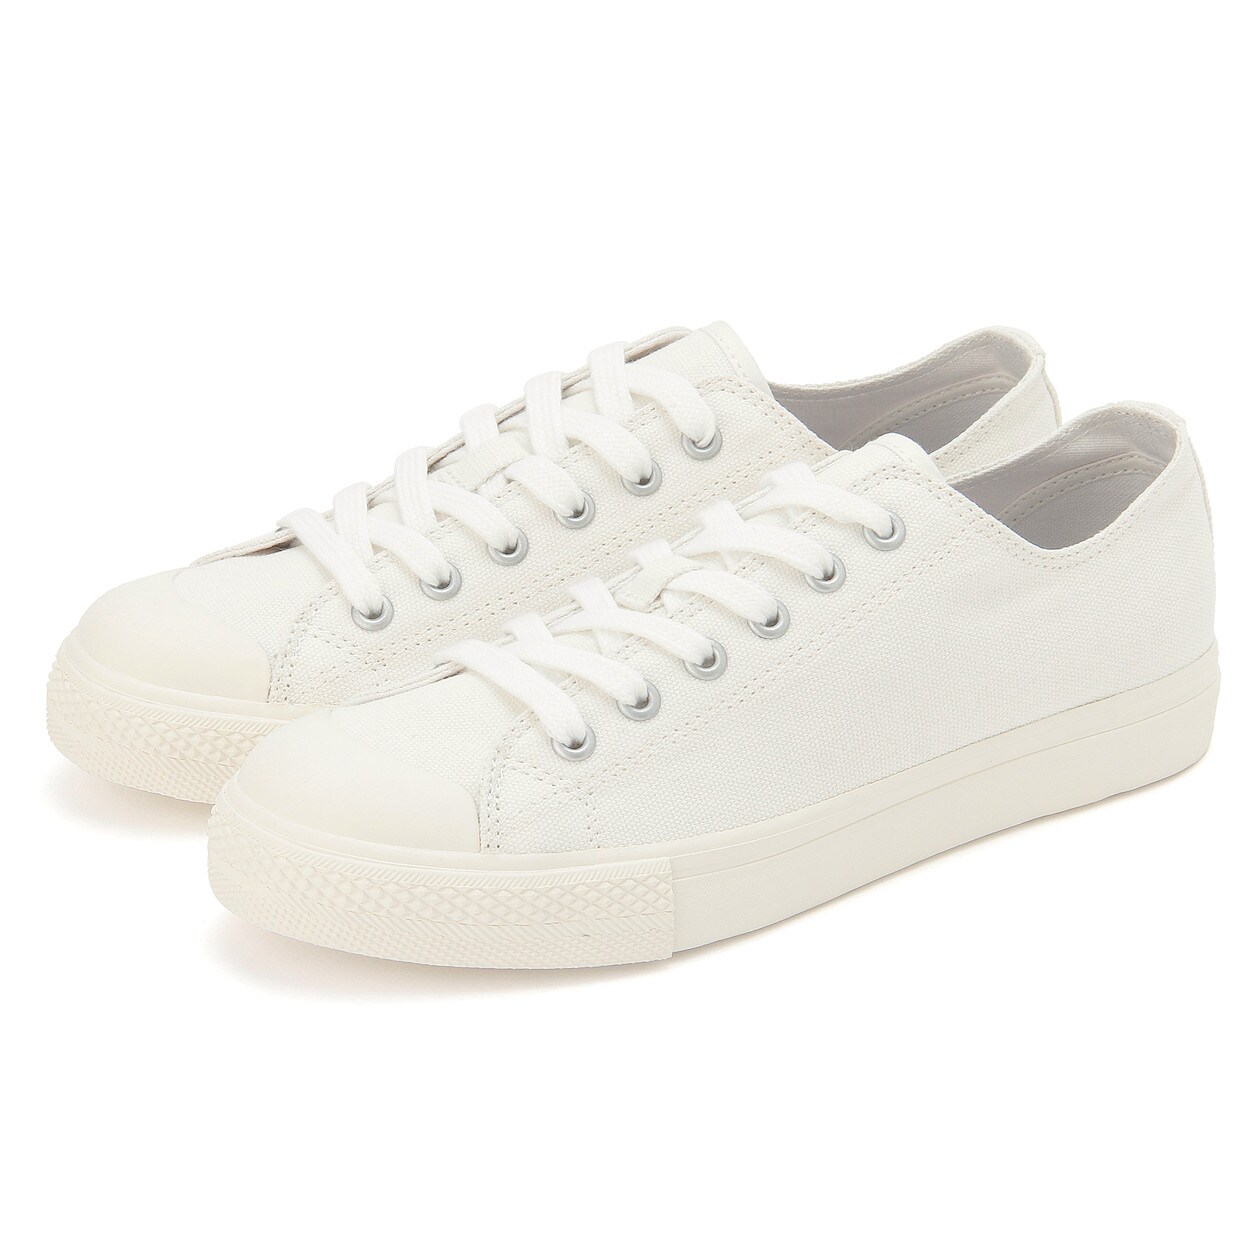 มูจิ รองเท้าผ้าใบ - MUJI Less Tiring Sneakers *เช็คไซส์ในตารางภาพ ยึดที่ขนาด CM เซ็นติเมตร กดสั่งซื้อ สี Off White ขนาด EU 34 สี Off Whiteขนาด EU 34